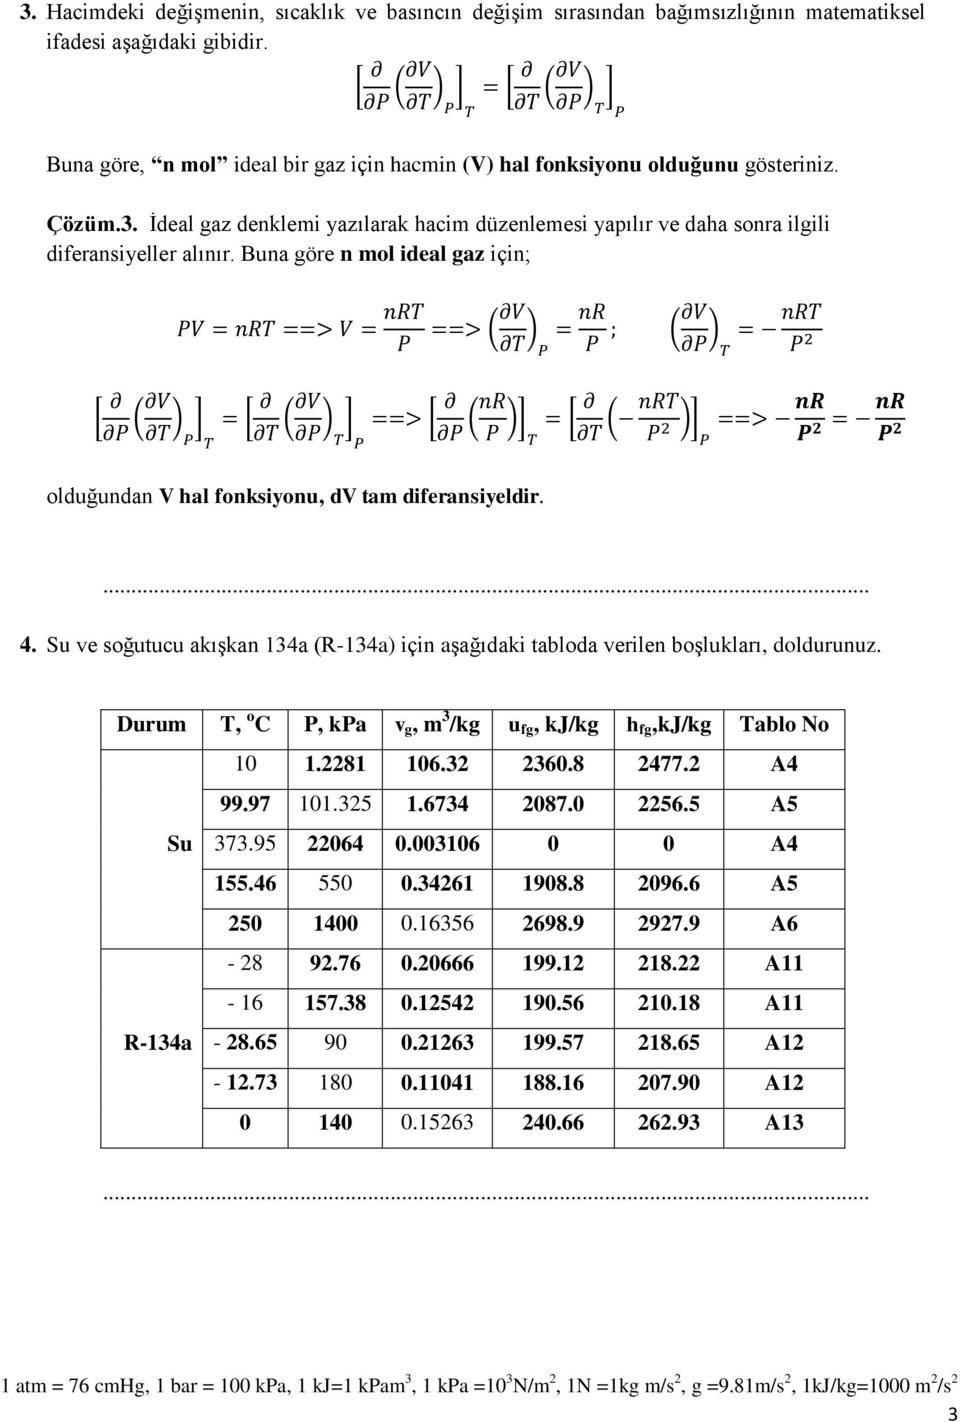 Buna göre n mol ideal gaz için; olduğundan V hal fonksiyonu, dv tam diferansiyeldir. 4. Su ve soğutucu akışkan 134a (R-134a) için aşağıdaki tabloda verilen boşlukları, doldurunuz.